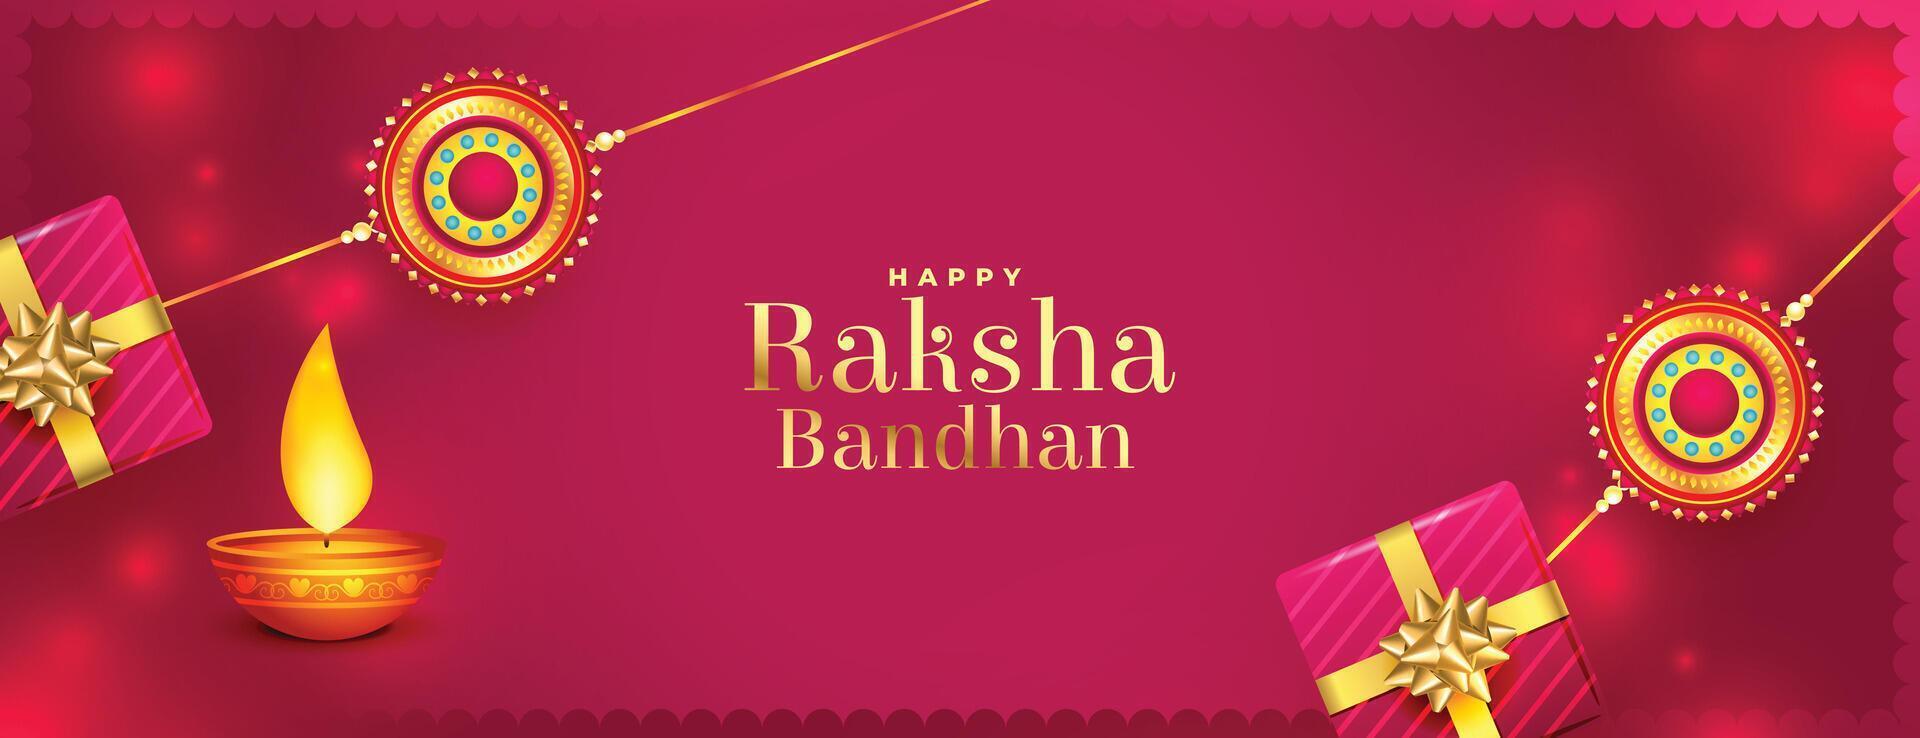 glücklich Raksha Bandhan schön realistisch traditionell Banner Design vektor